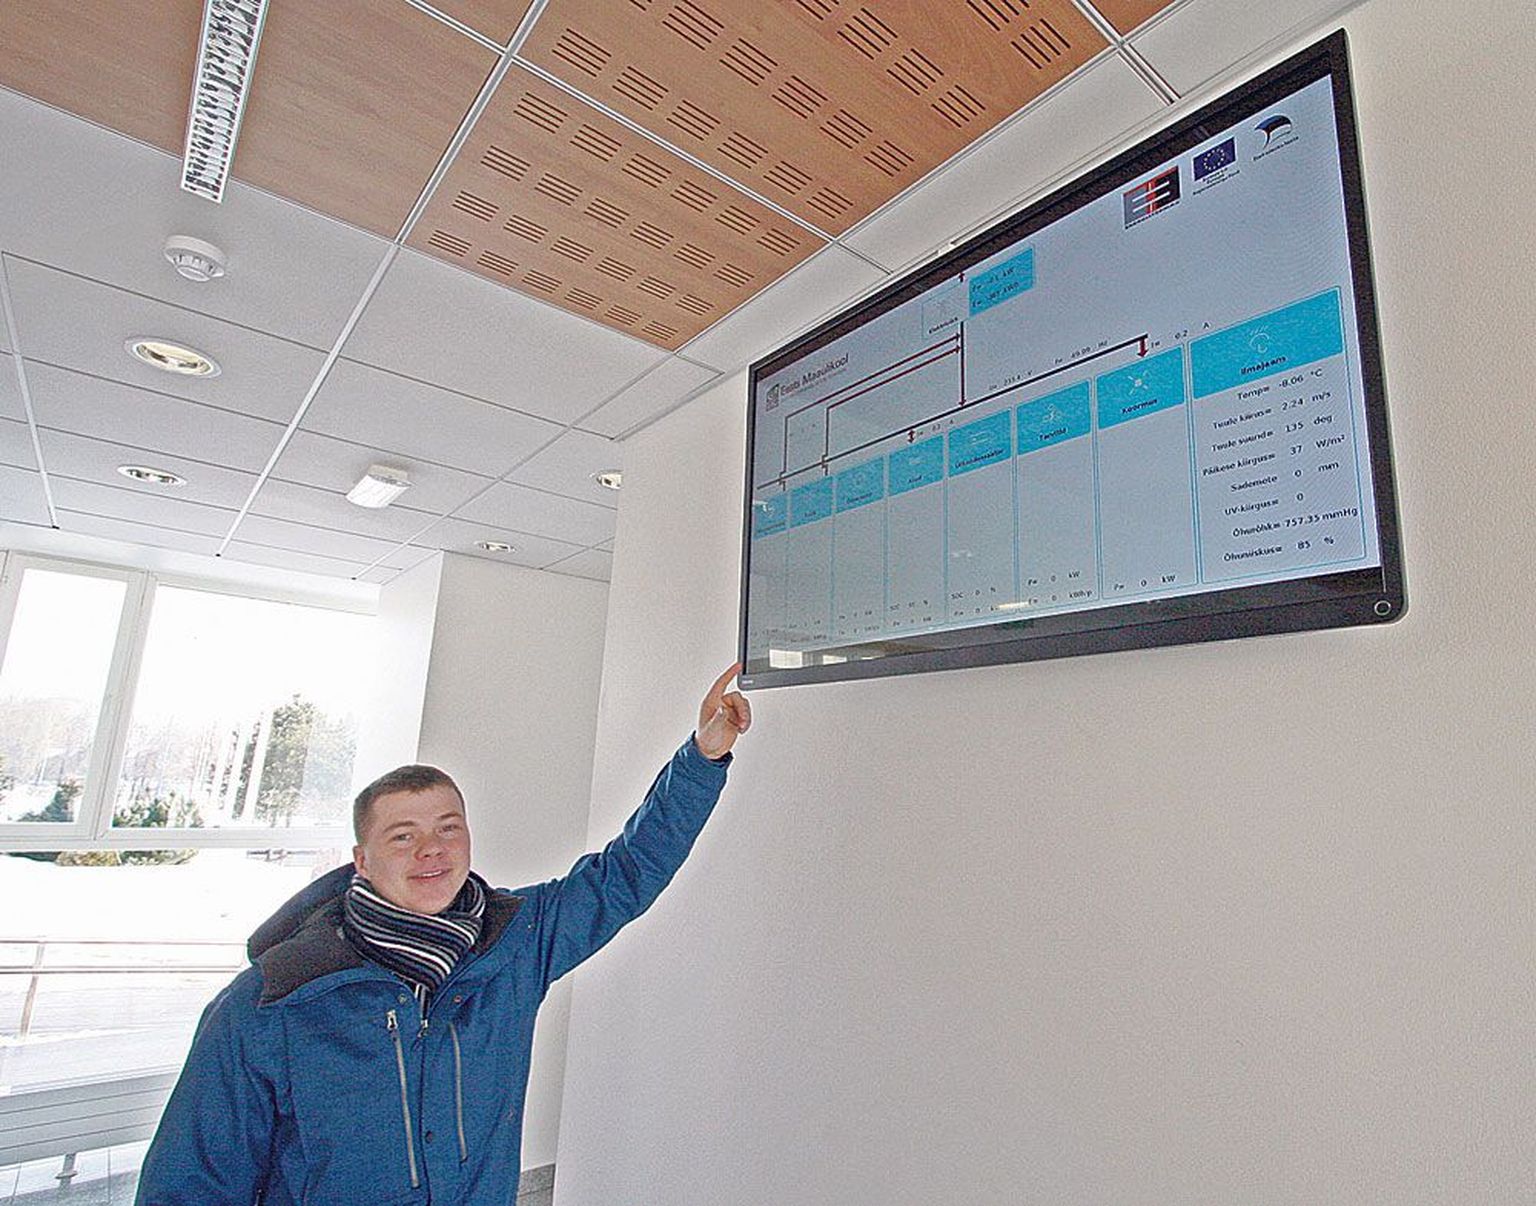 Maaülikooli energiakasutuse eriala doktorant Maido Märss näitab tehnikamaja fuajees paiknevat ekraani, millel jooksevad ilmaandmed ning taastuvenergia tootmise andmed reaalajas.